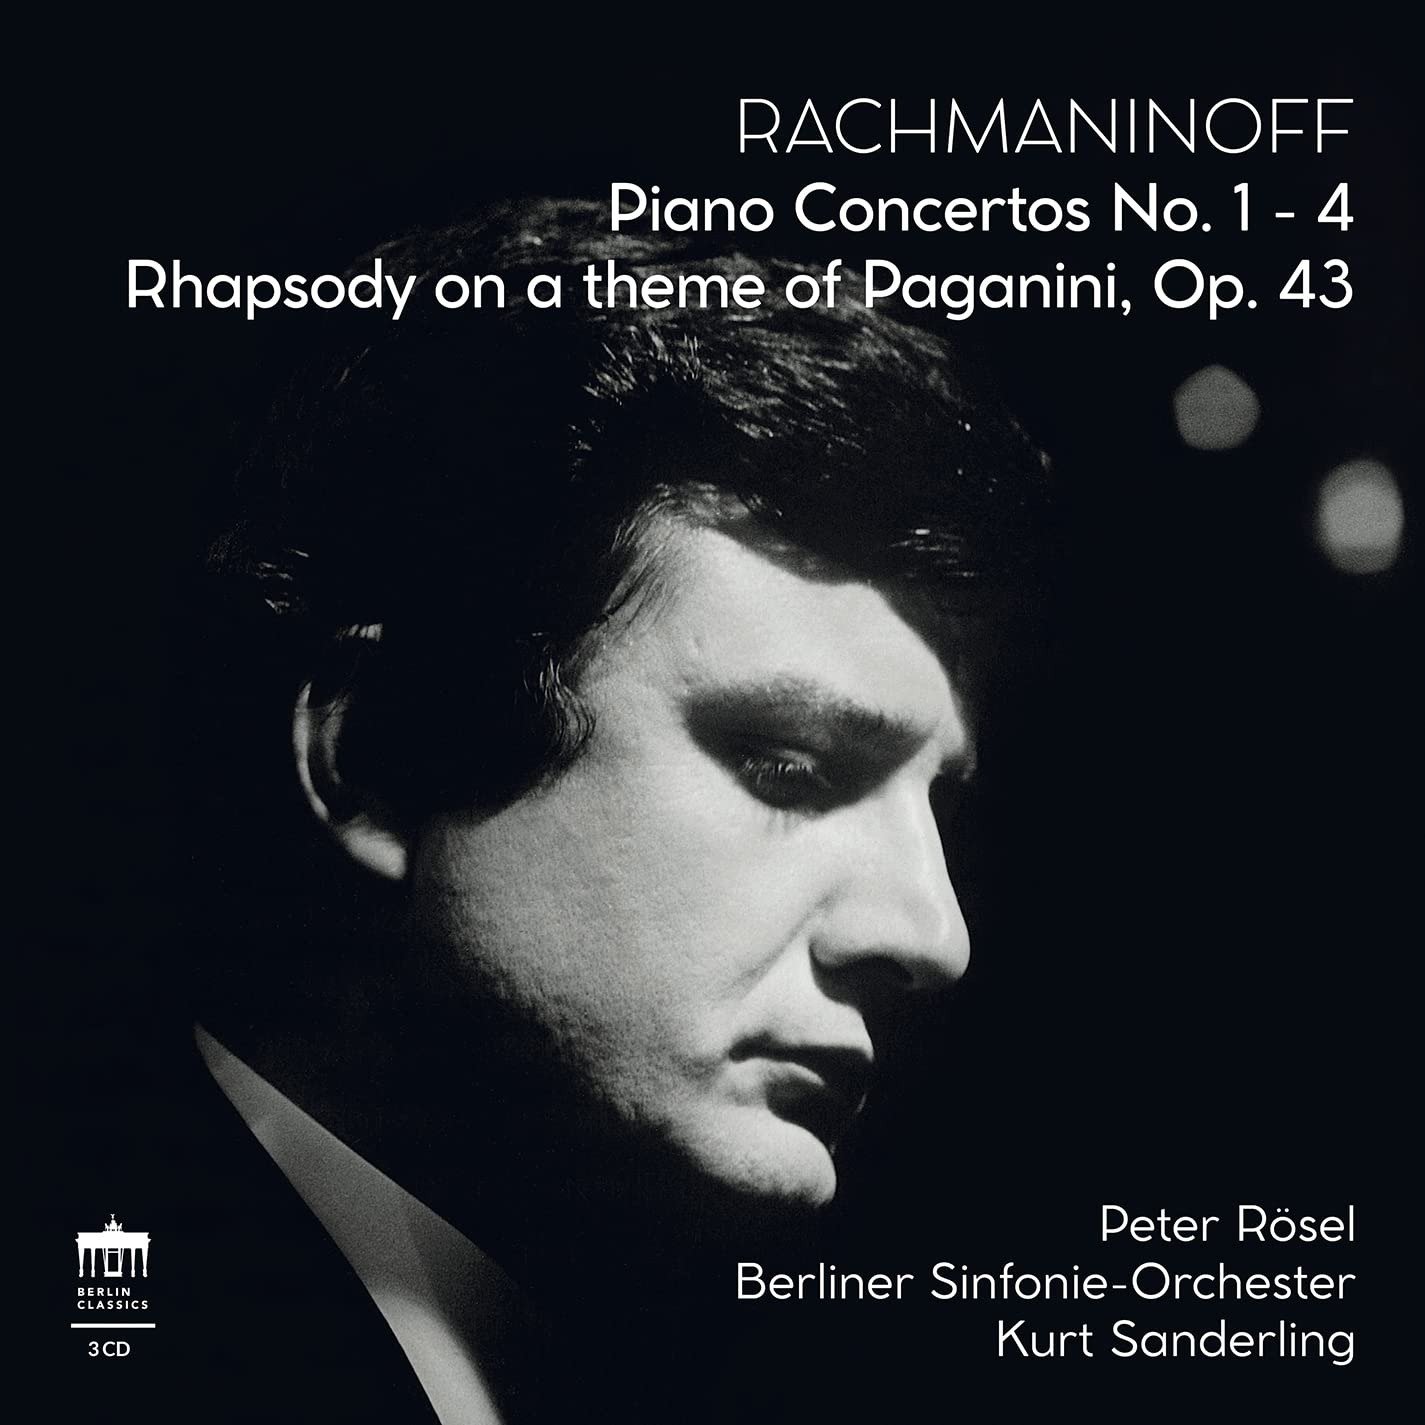 CD Shop - ROSEL, PETER RACHMANINOFF PIANO CONCERTOS NO. 1-4